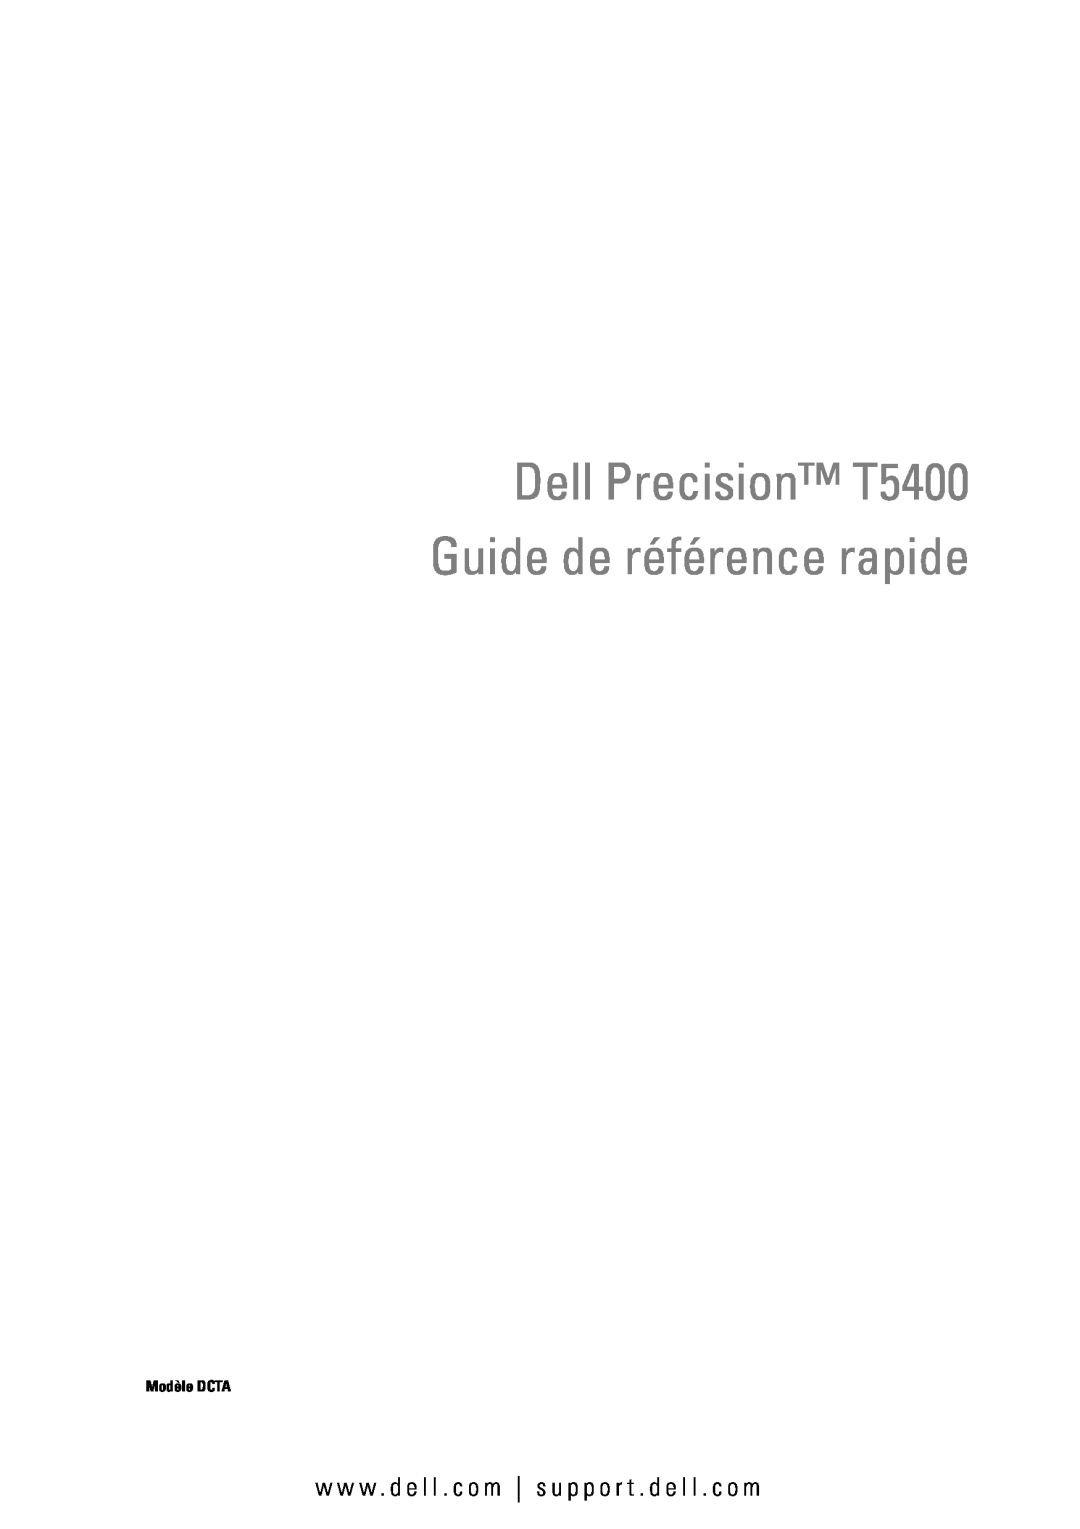 Dell manual Dell Precision T5400 Guide de référence rapide, w w w . d e l l . c o m s u p p o r t . d e l l . c o m 